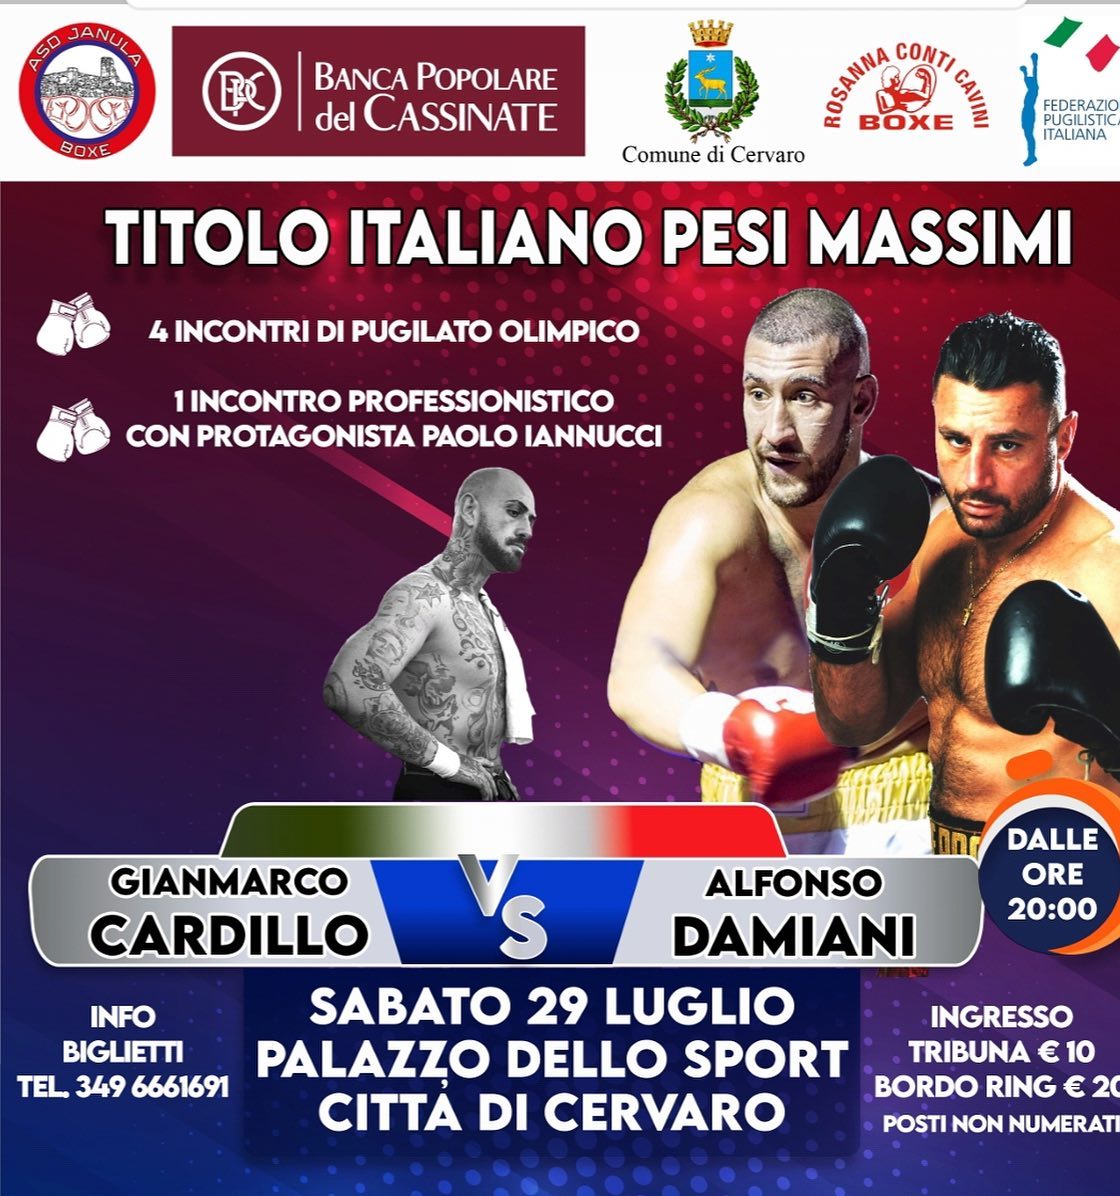 Stasera a Cervaro Cardillo vs Damiani per il Titolo Italiano Massimi - DIRETTA FPIOFFICIALCHANNEL YOUTUBE + FIGHTERS LIFE